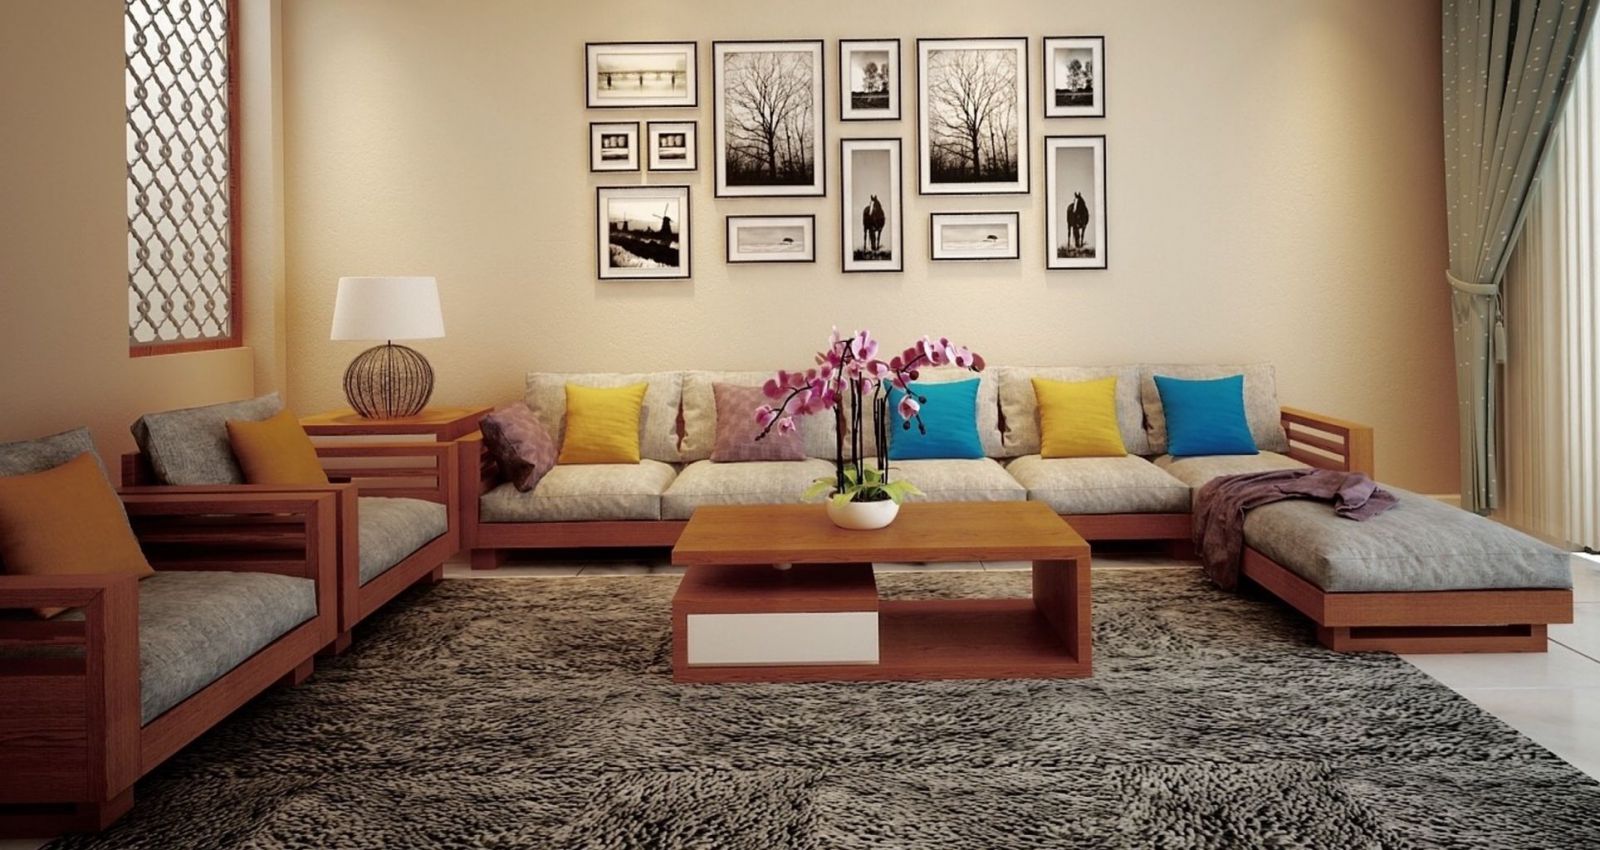 Review Top 21+ Ghế Sofa phòng khách kiểu Nhật nhập khẩu HCM